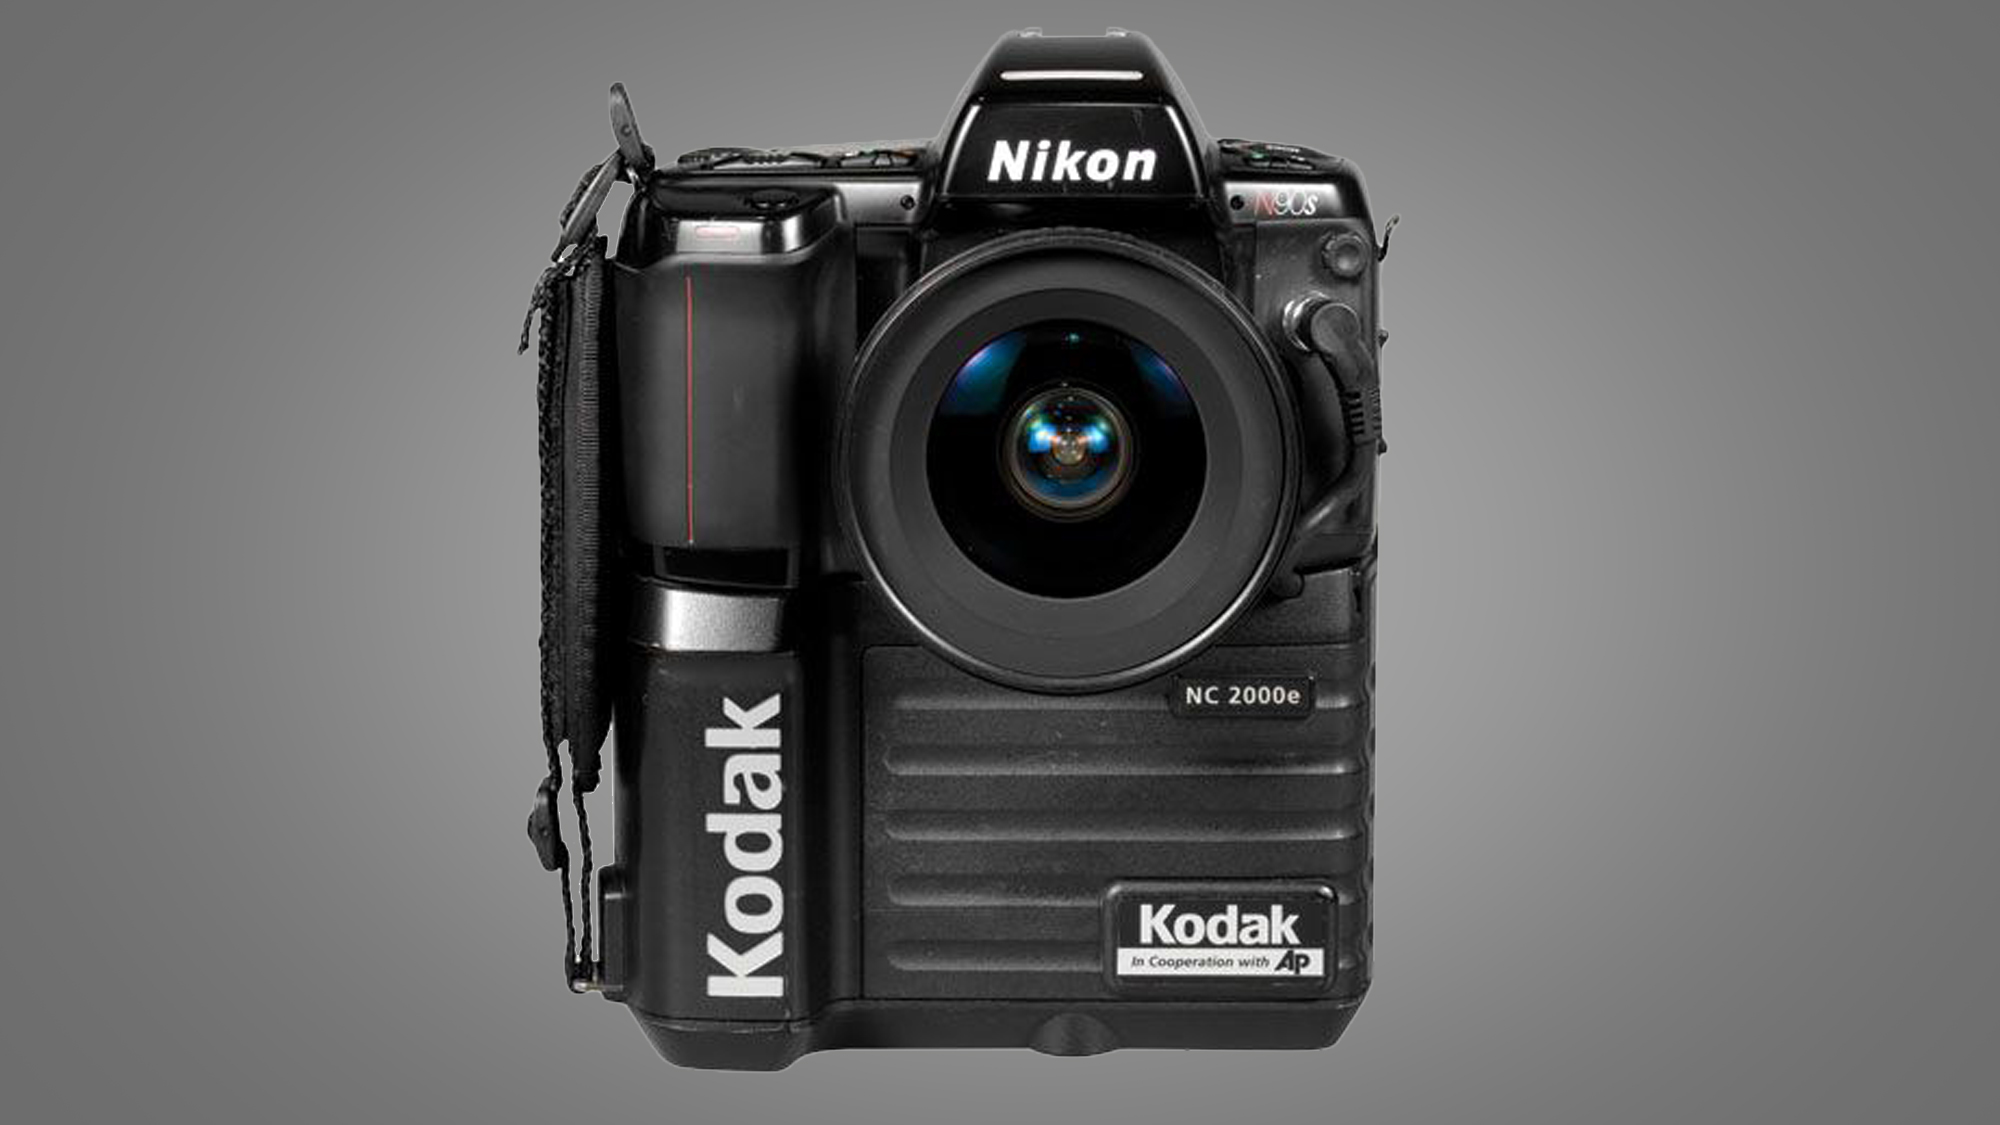 The Nikon/ Kodak NC2000 AP camera on a grey background